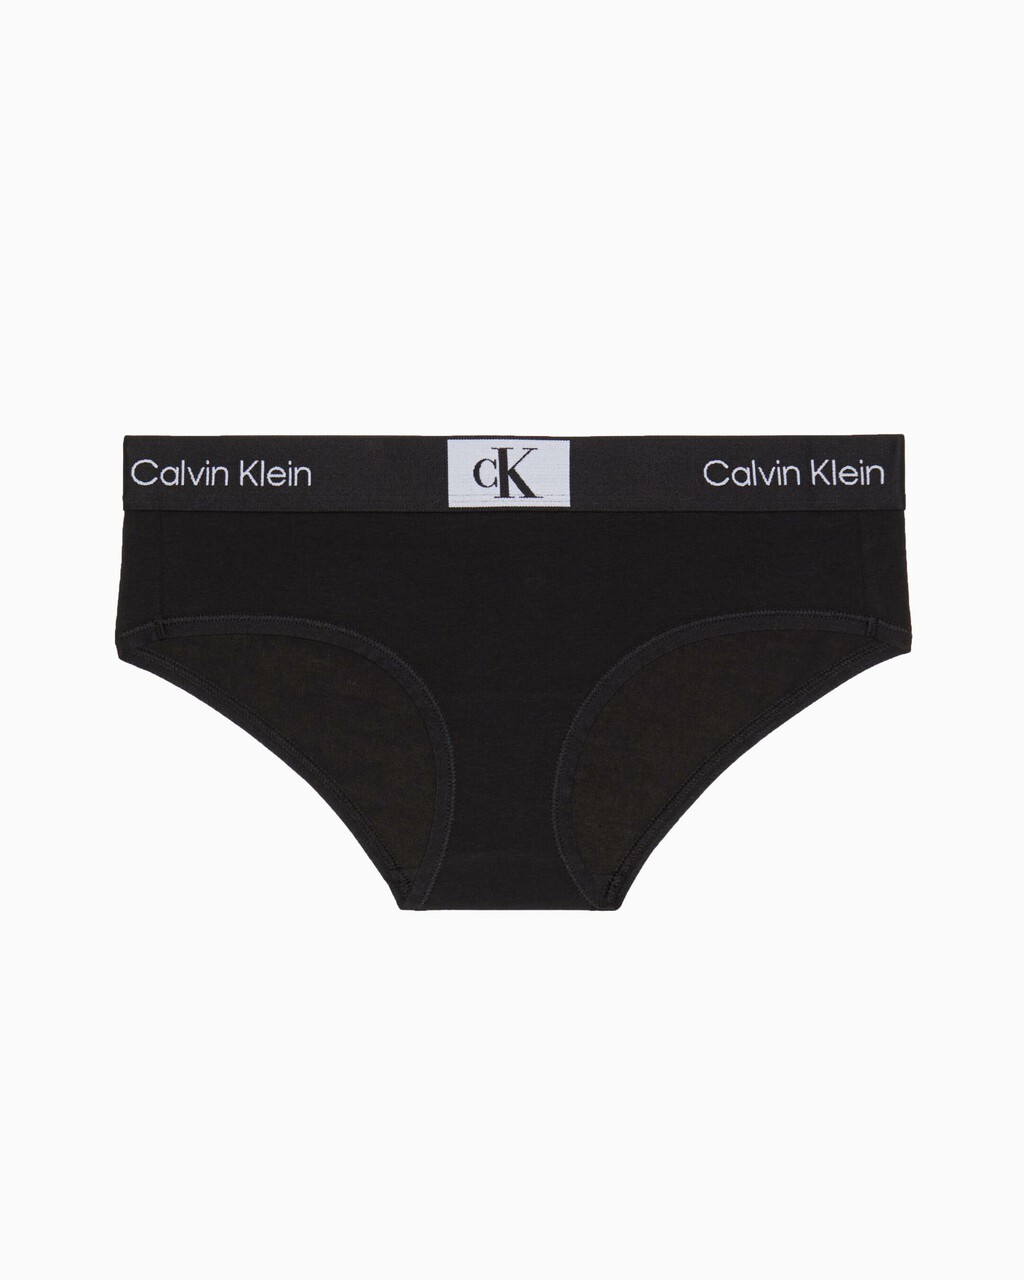 Calvin Klein Lingerie & Nightwear for Women - FARFETCH